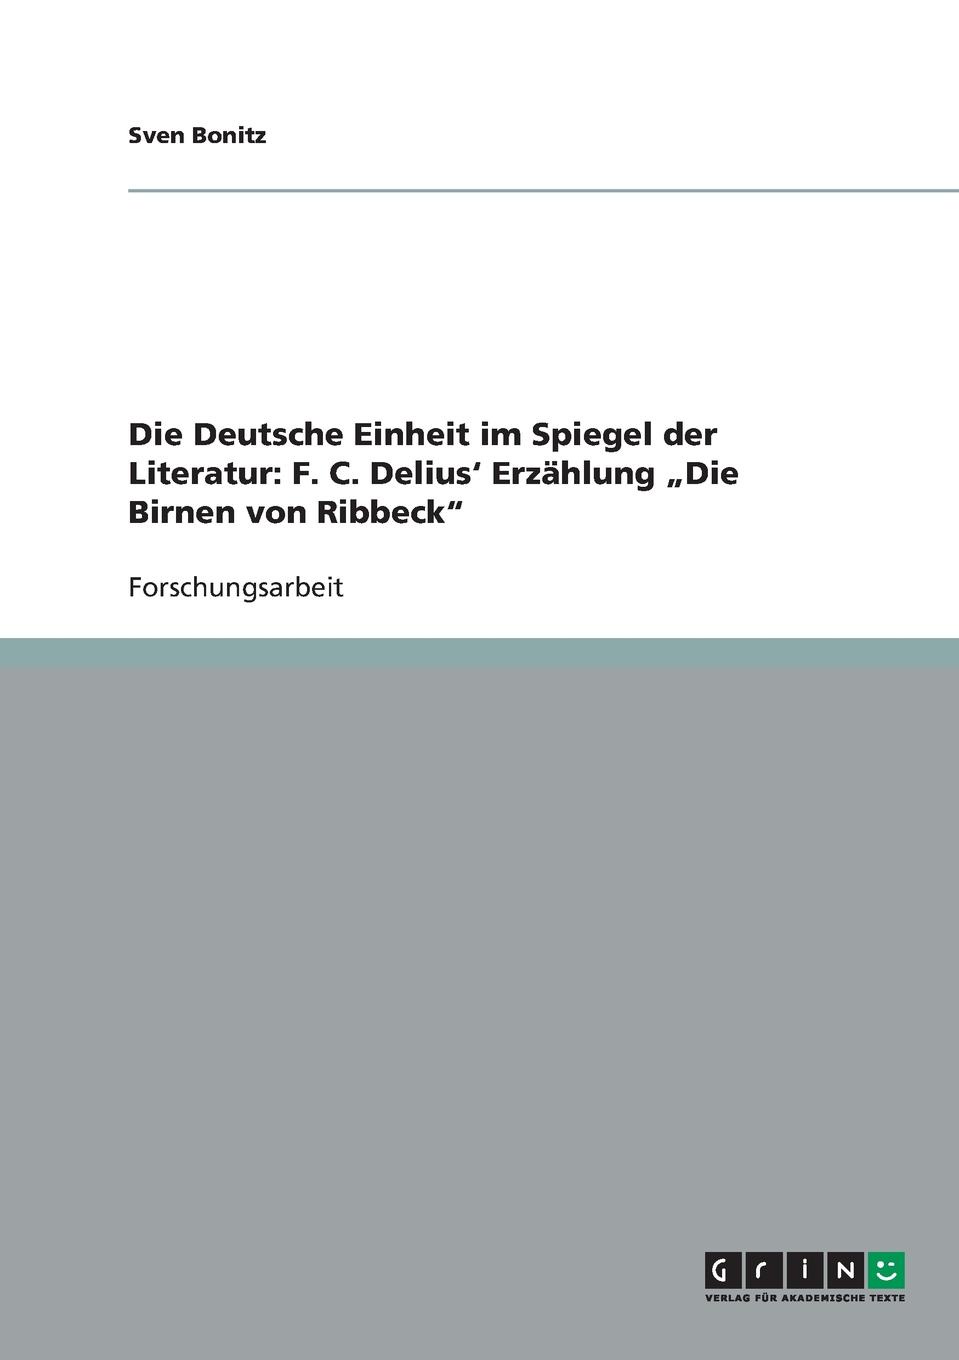 Die Deutsche Einheit im Spiegel der Literatur. F. C. Delius. Erzahlung .Die Birnen von Ribbeck\